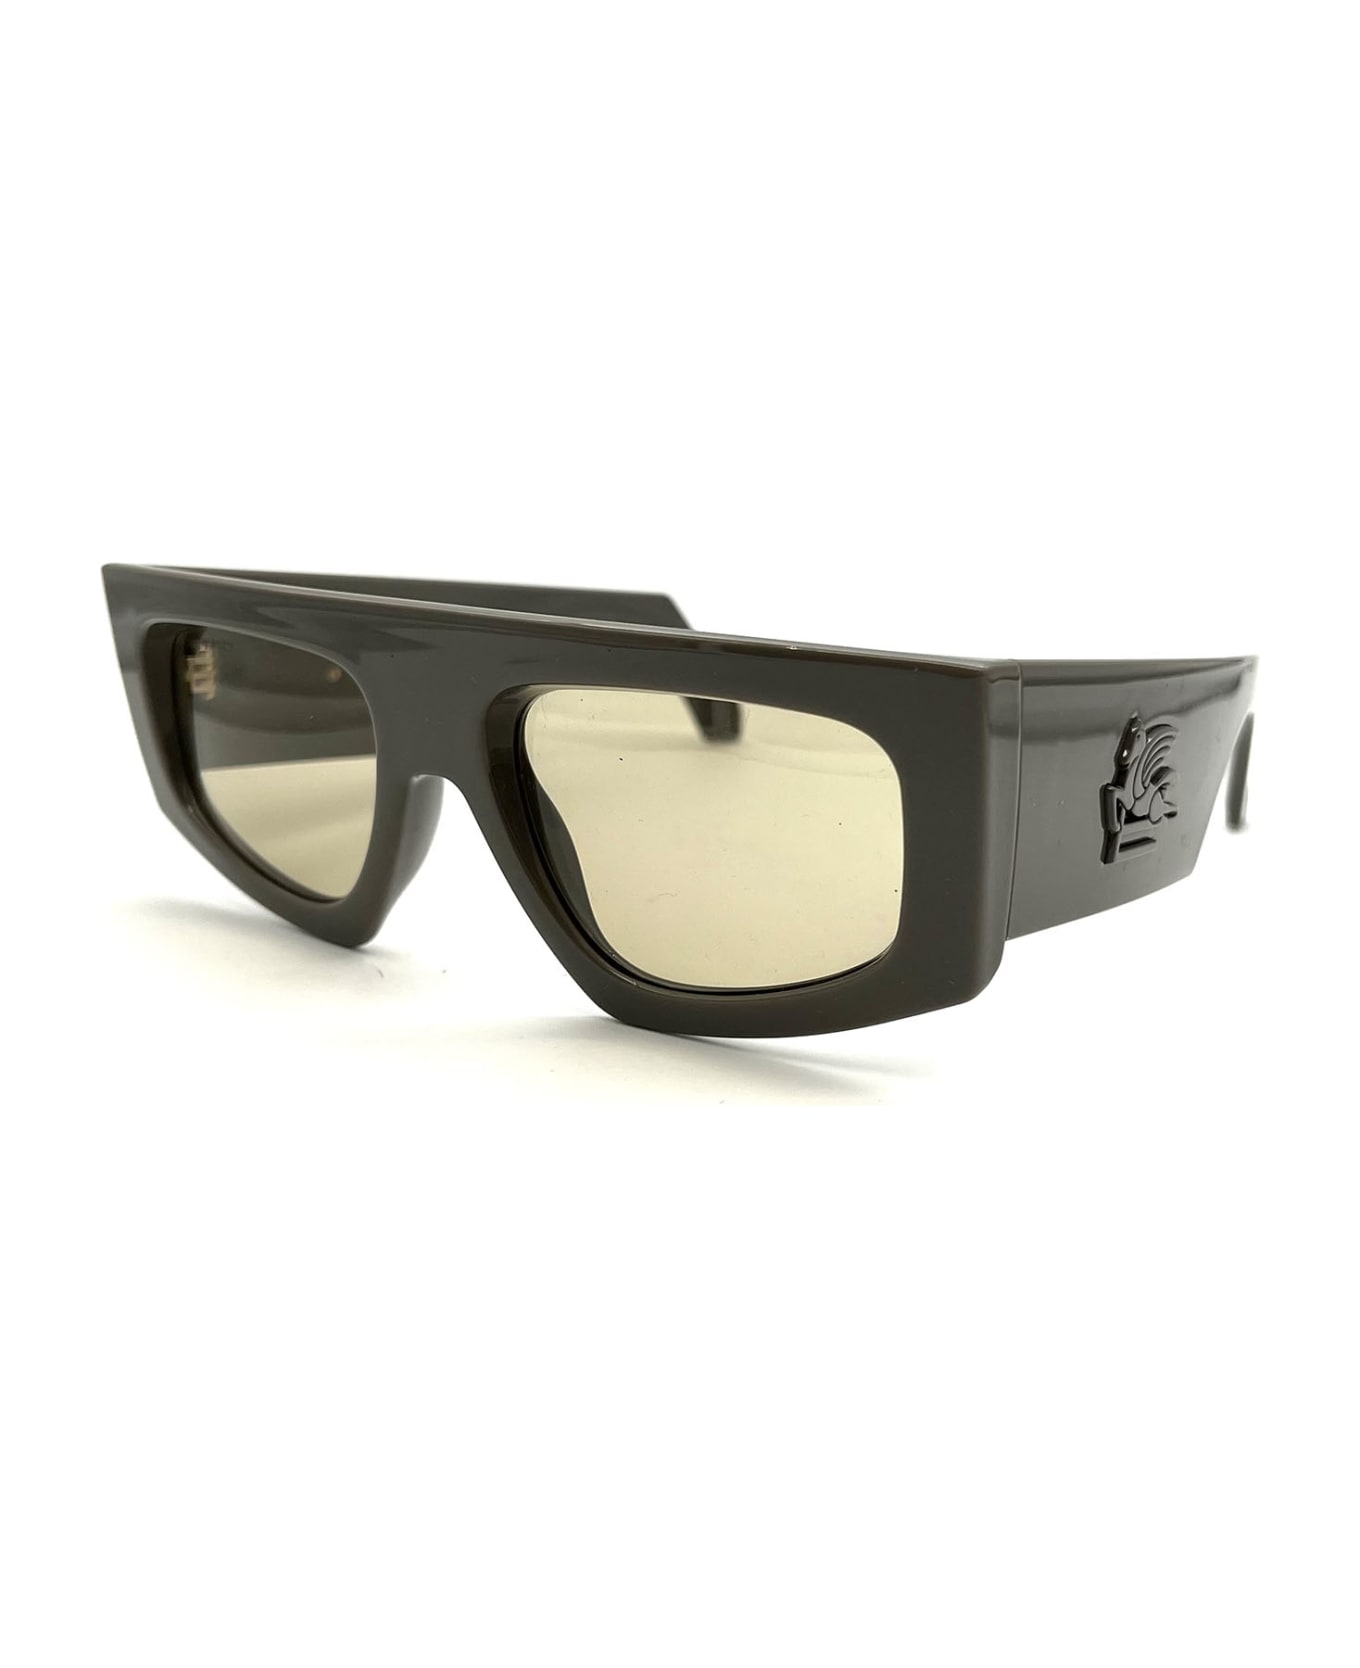 Etro 0032/G/S Sunglasses - Mud